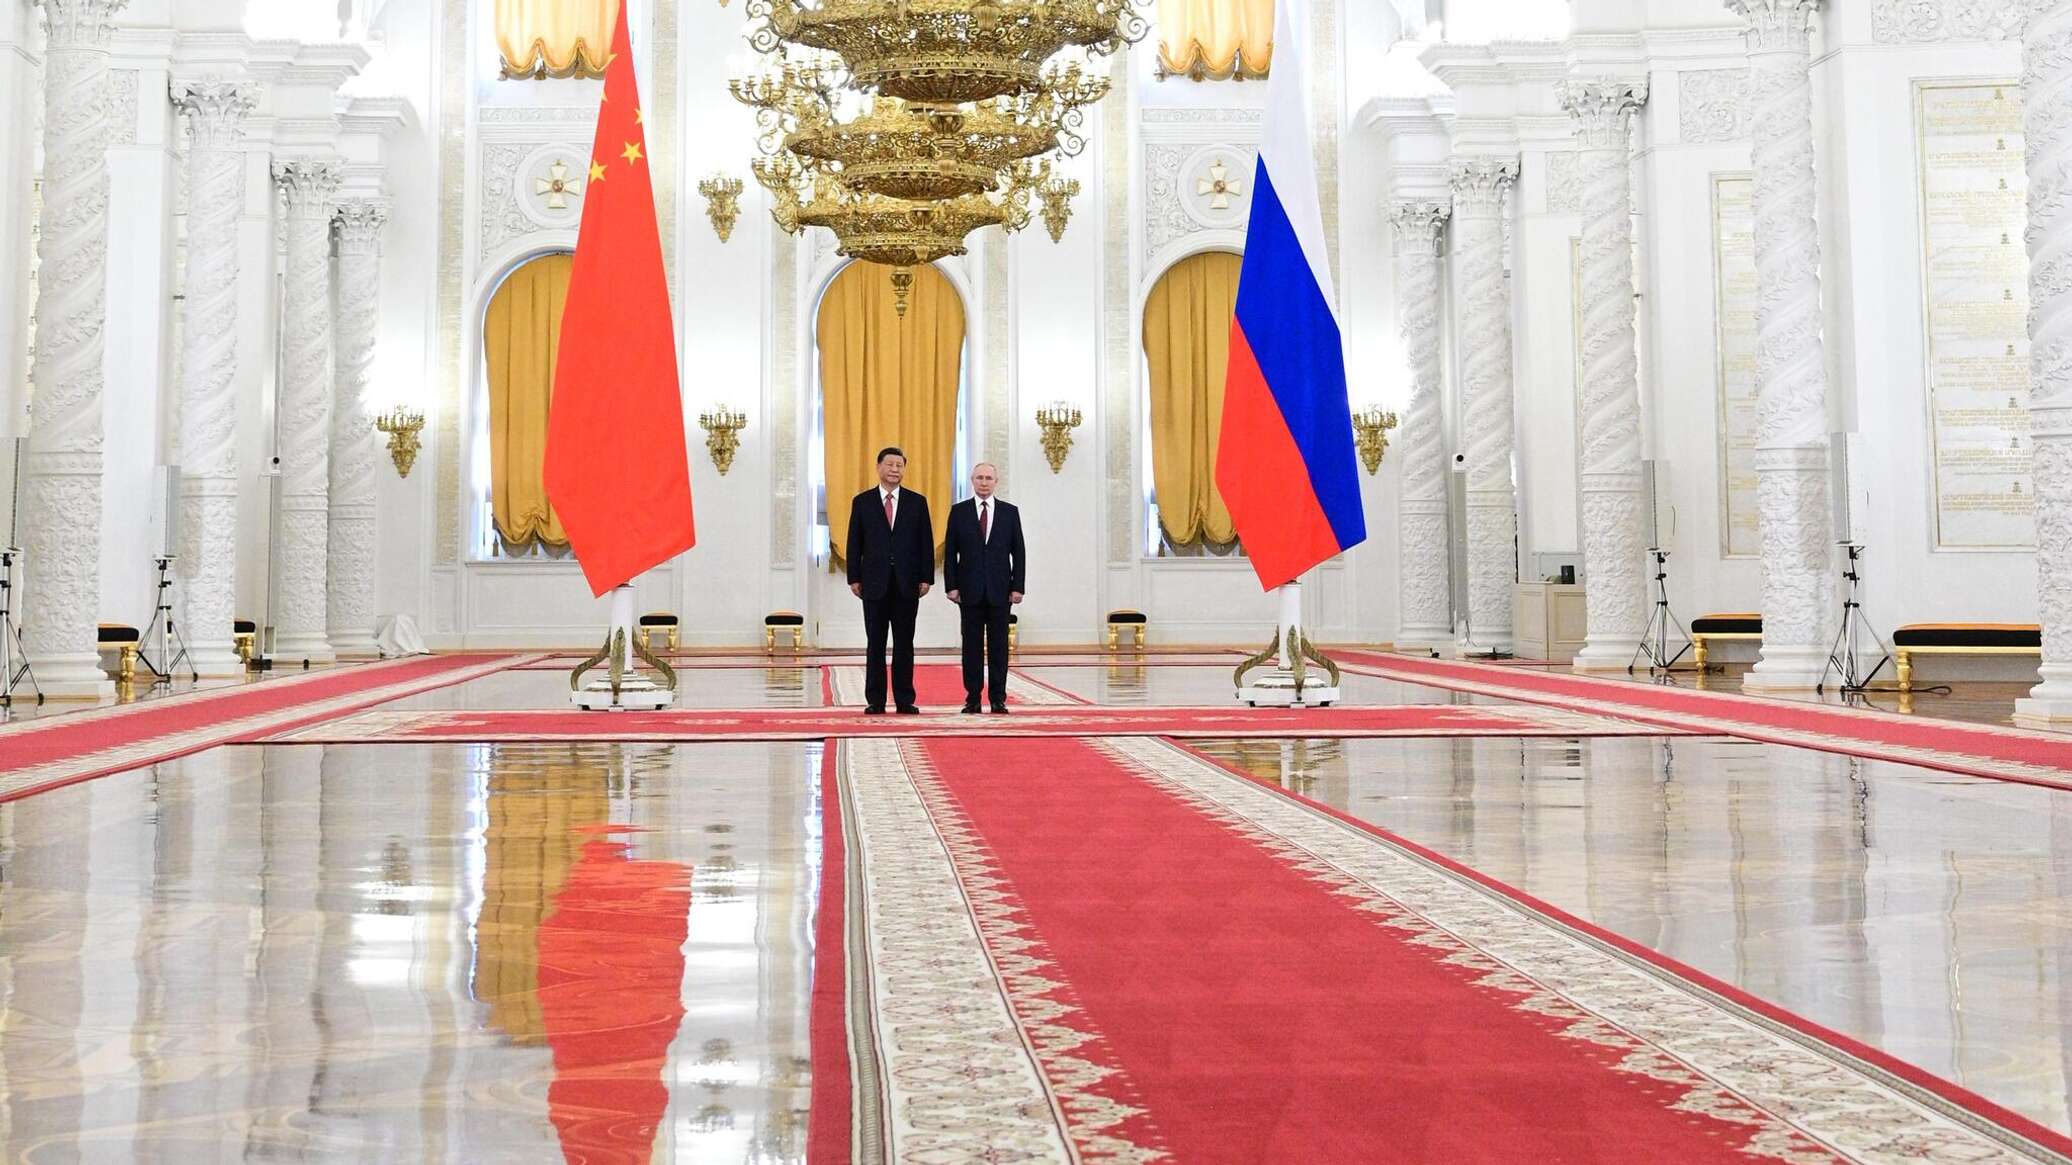 خبير: زيارة الرئيس الصيني إلى موسكو تحمل رسائل إلى الغرب وأمريكا